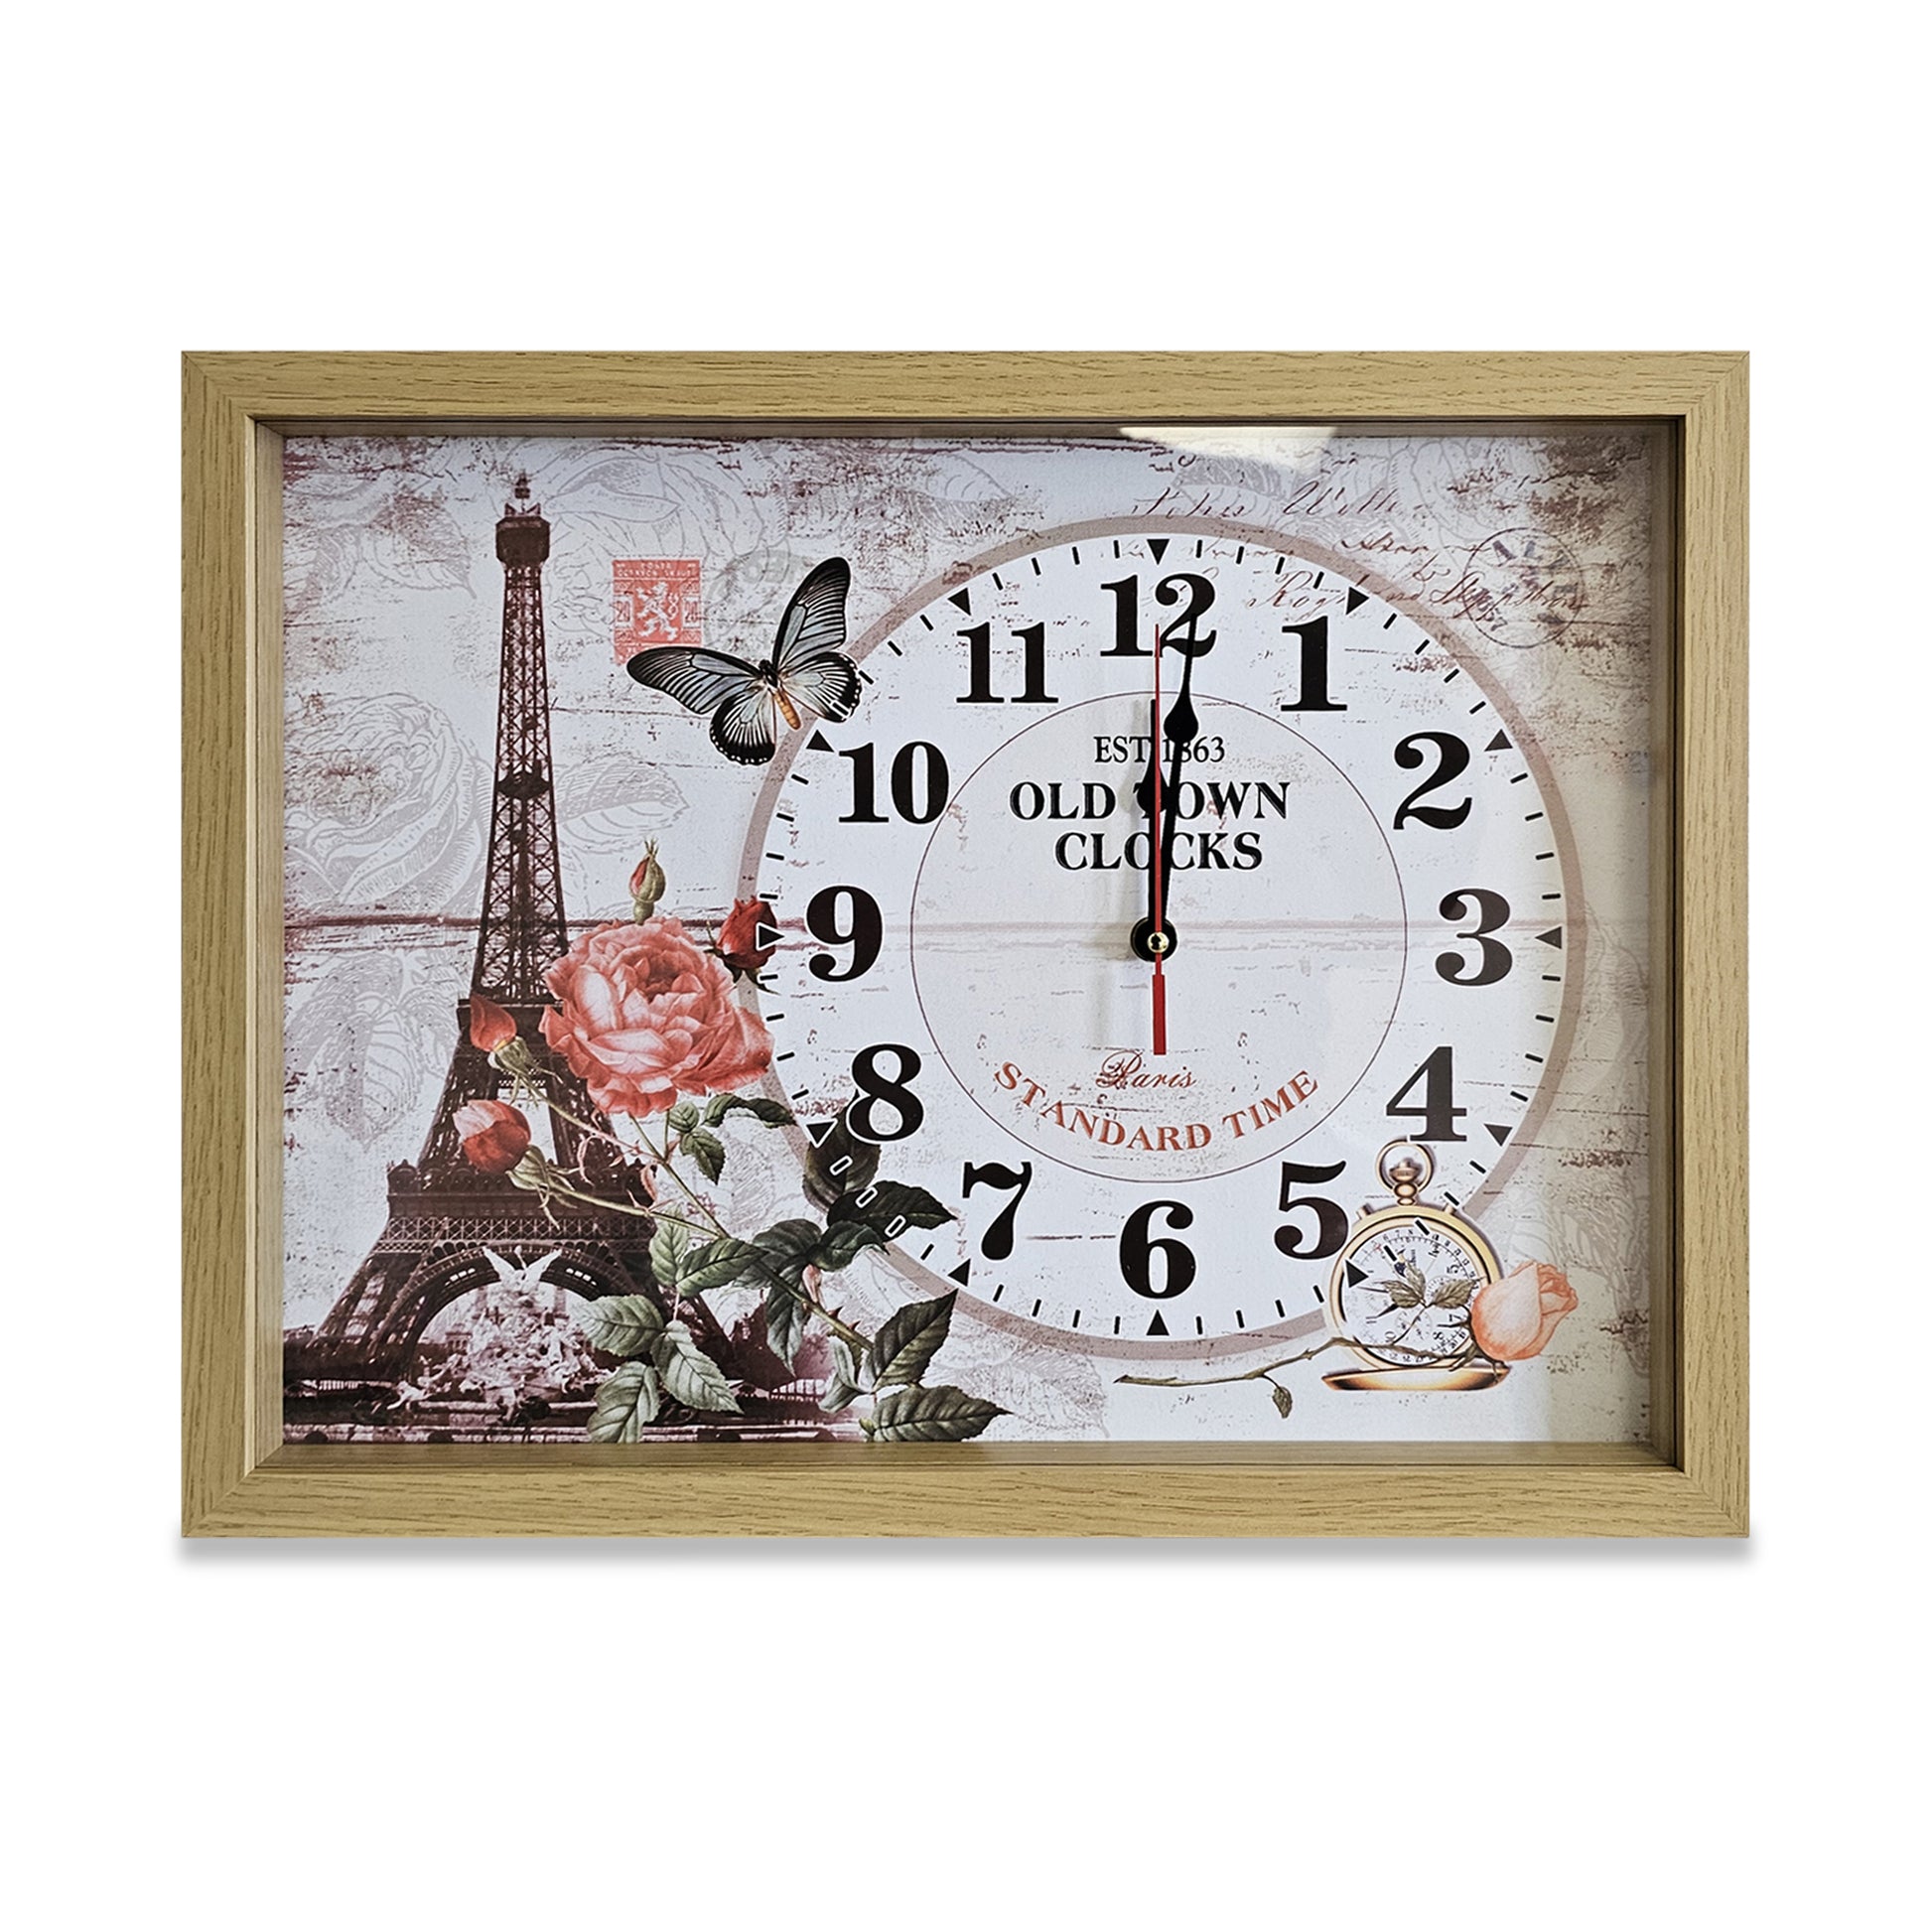 Paris Eiffel Tower Rectangular Wooden Art Painting Wall Clock~5346